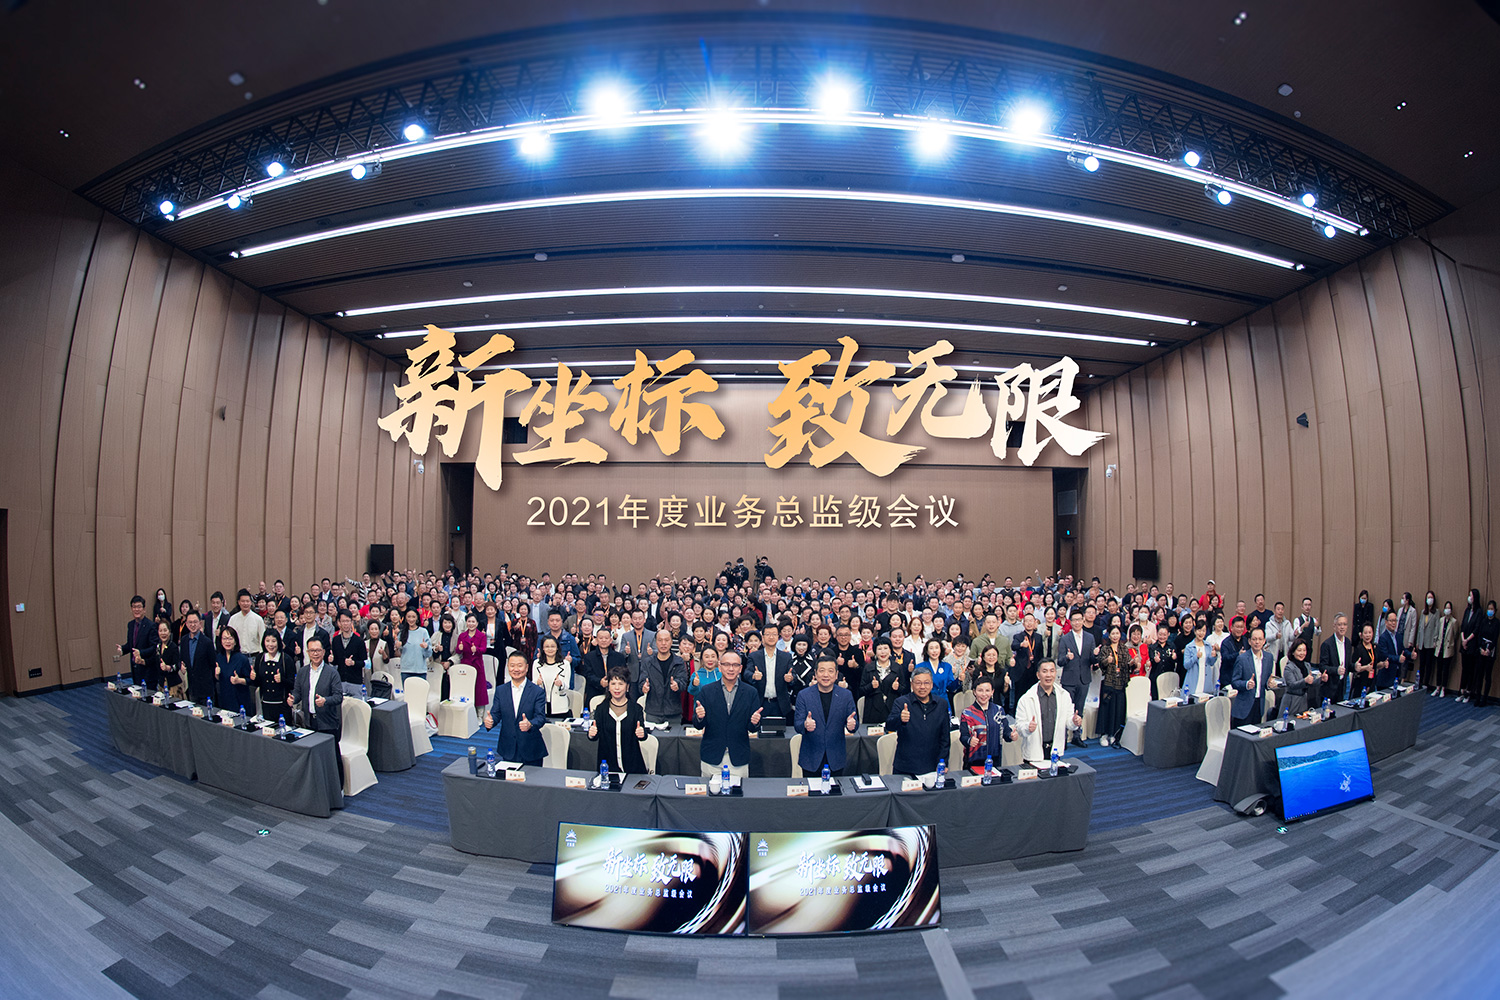 共襄未来发展，广西快三
2021年度业务总监级会议隆重举行